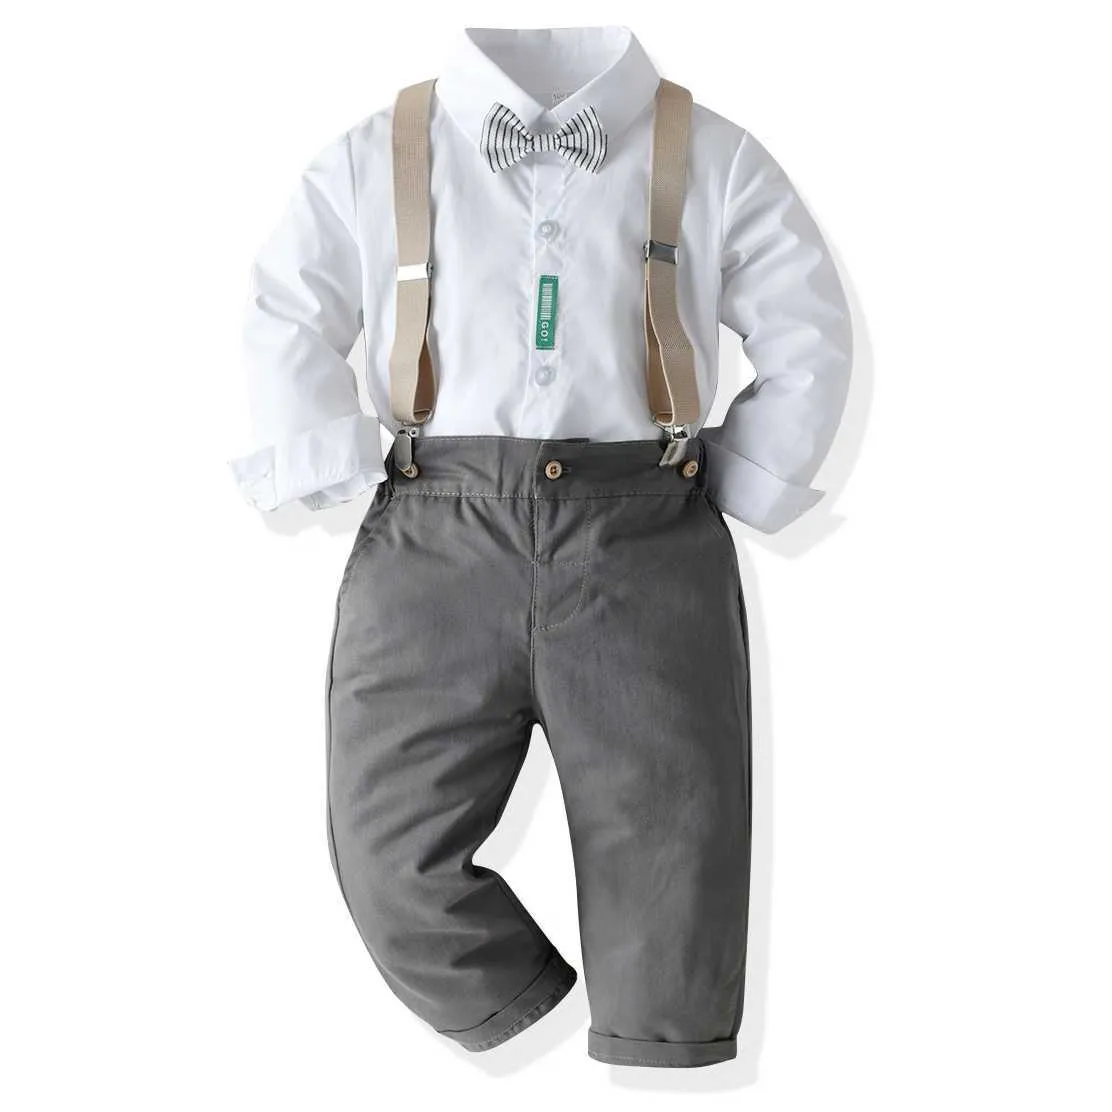 2021 Enfants tendance039 Ensembles de vêtements blancs de vêtements blancs Boutique pour enfants Vêtements Gentleman Suit Boys Outfits Ropa de Beb7830611